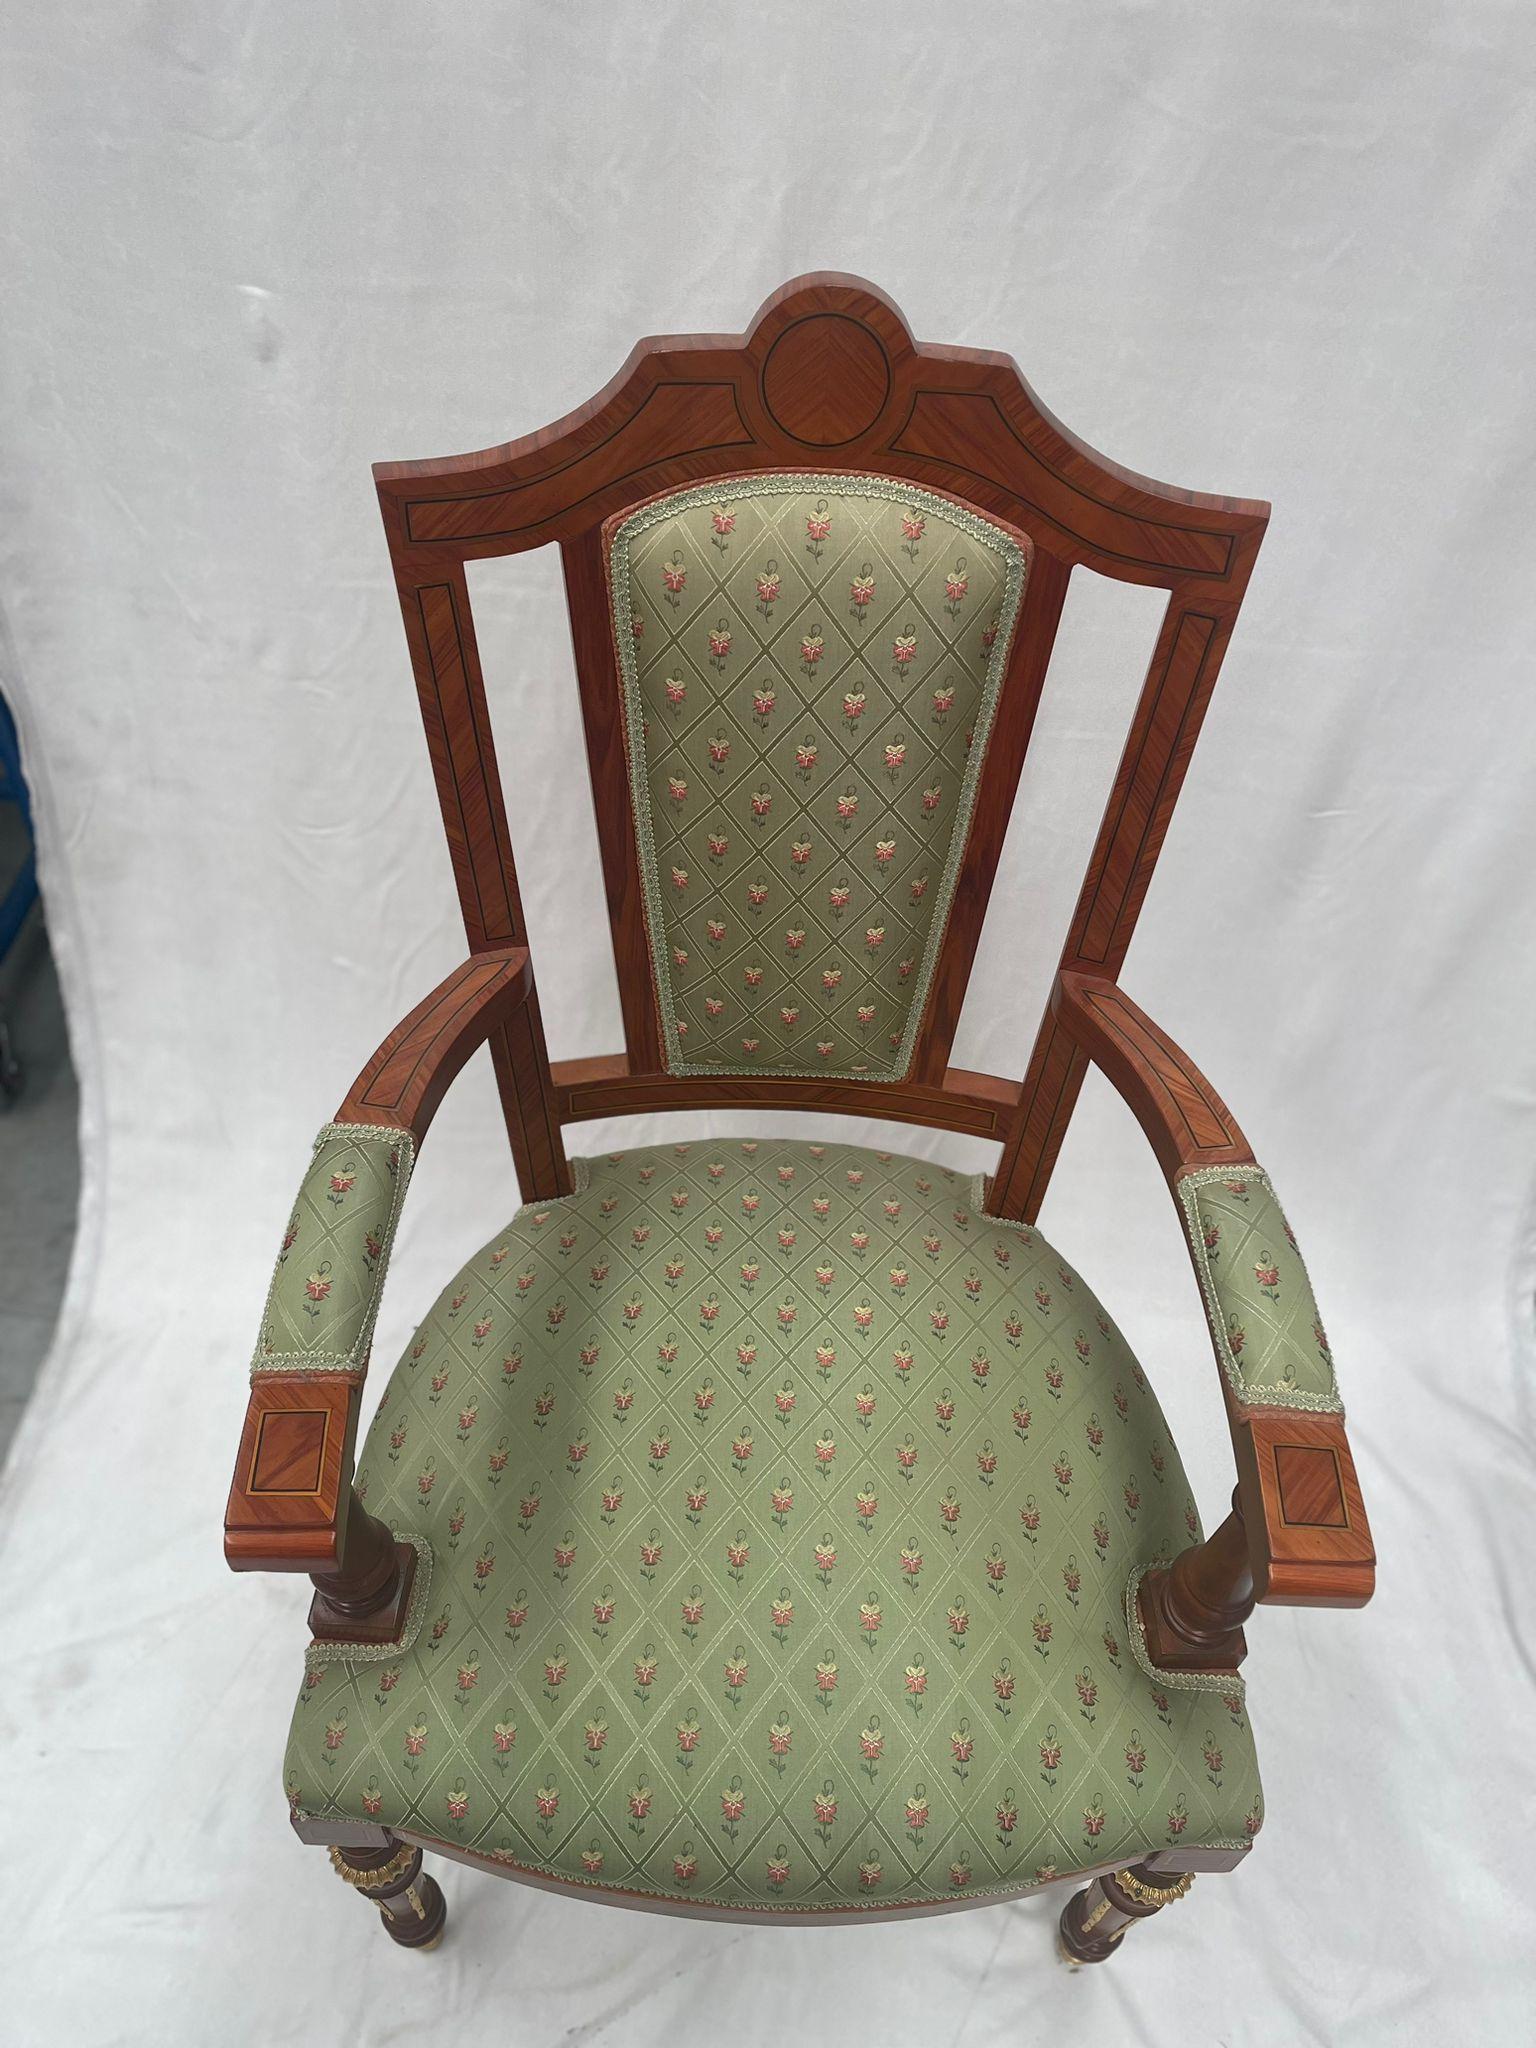 Fauteuil élégant créé en bois de noyer, décorations dorées exquises présentes sur les pieds du fauteuil. L'assise du fauteuil est recouverte d'un tissu délicat avec un padding qui rend le fauteuil confortable. créé pour le roi d'arabie